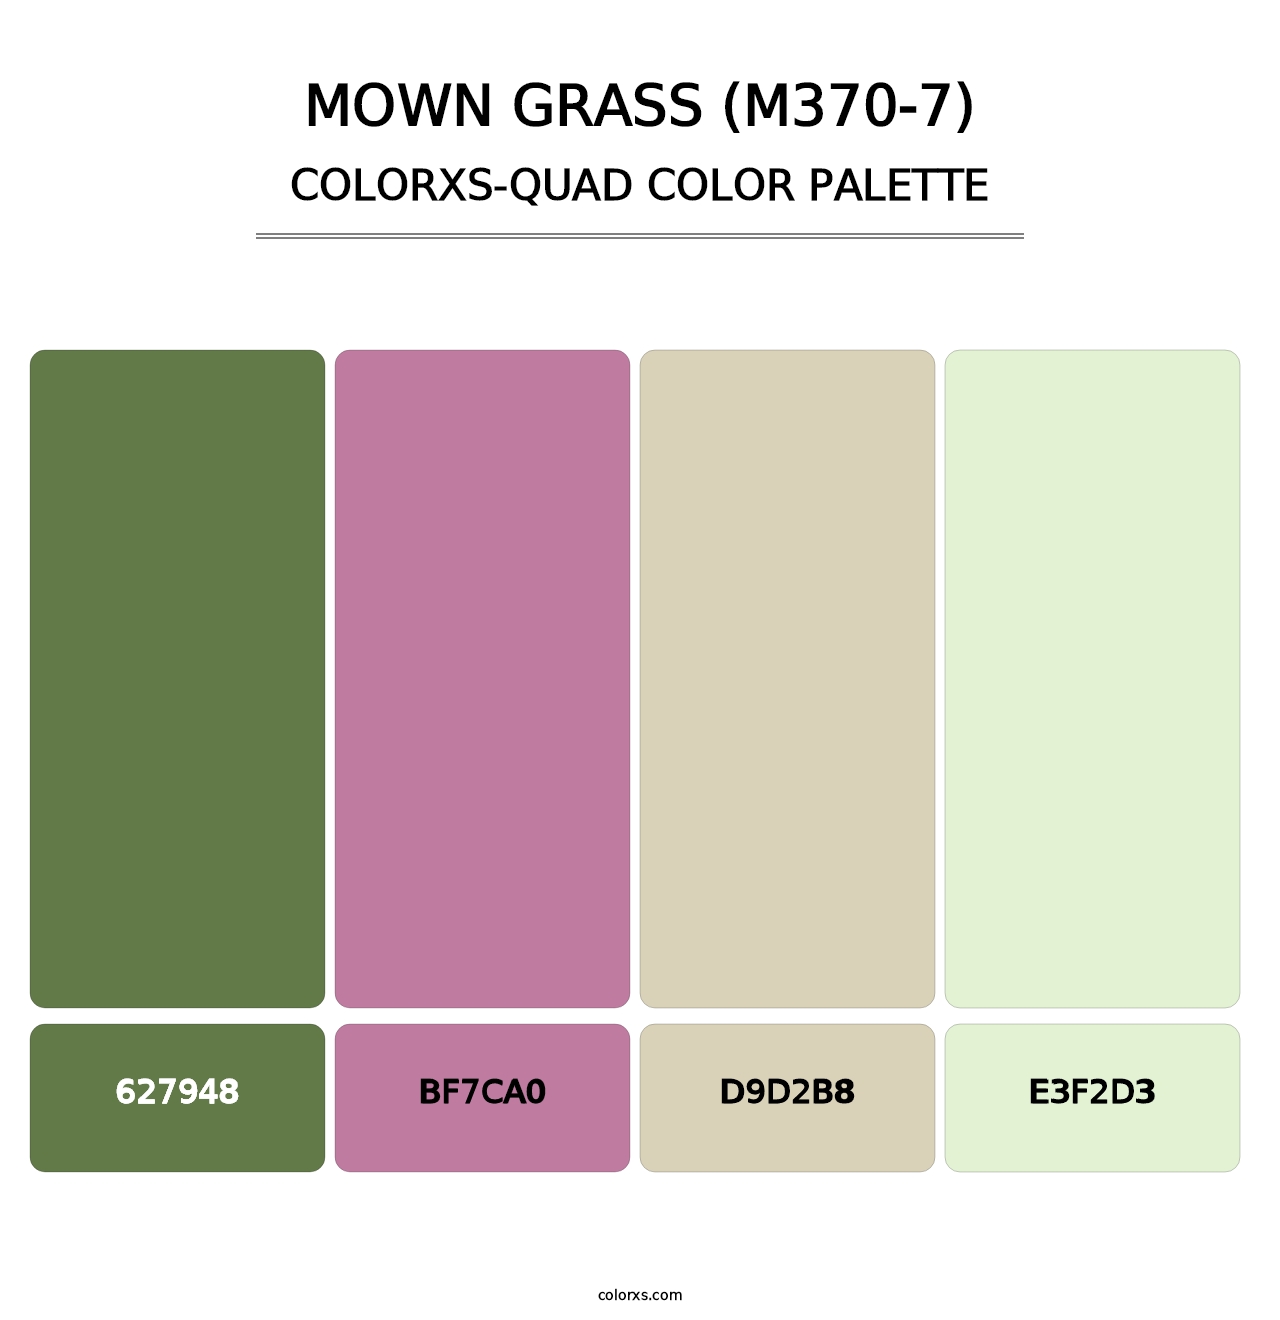 Mown Grass (M370-7) - Colorxs Quad Palette